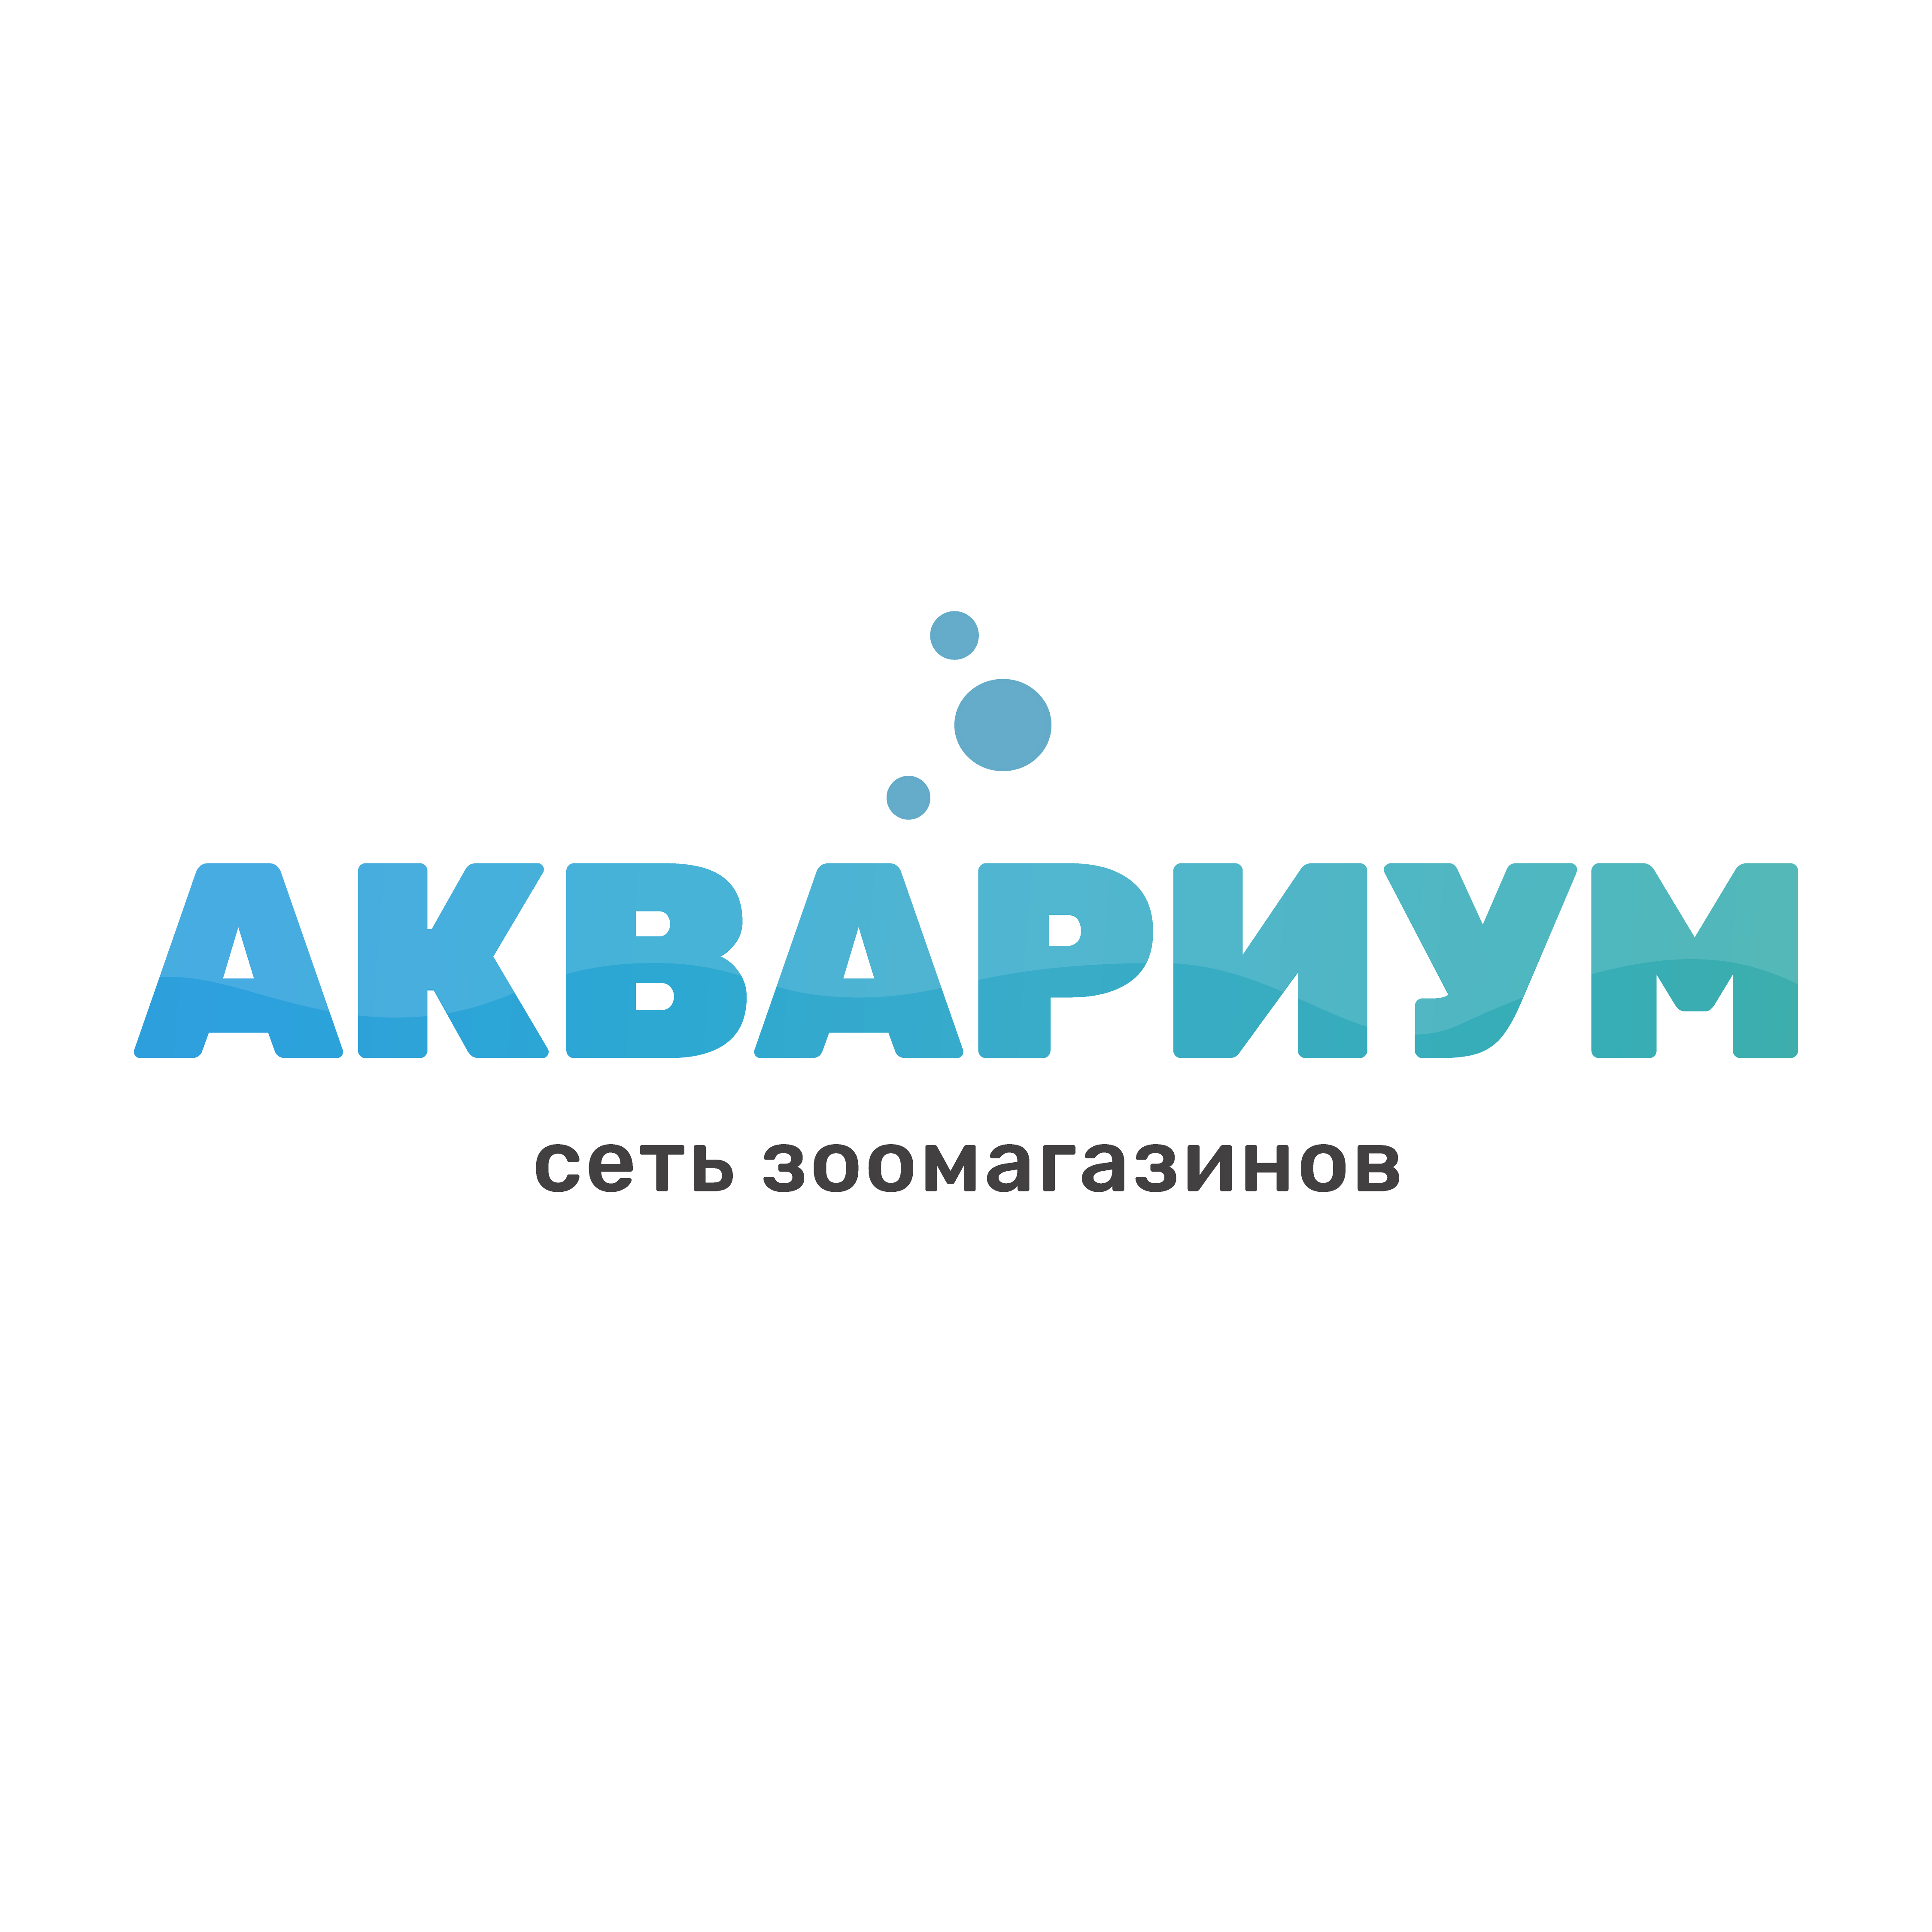 АКВАРИУМ, сеть зоомагазинов - Город Пенза Лого для Google 2.png